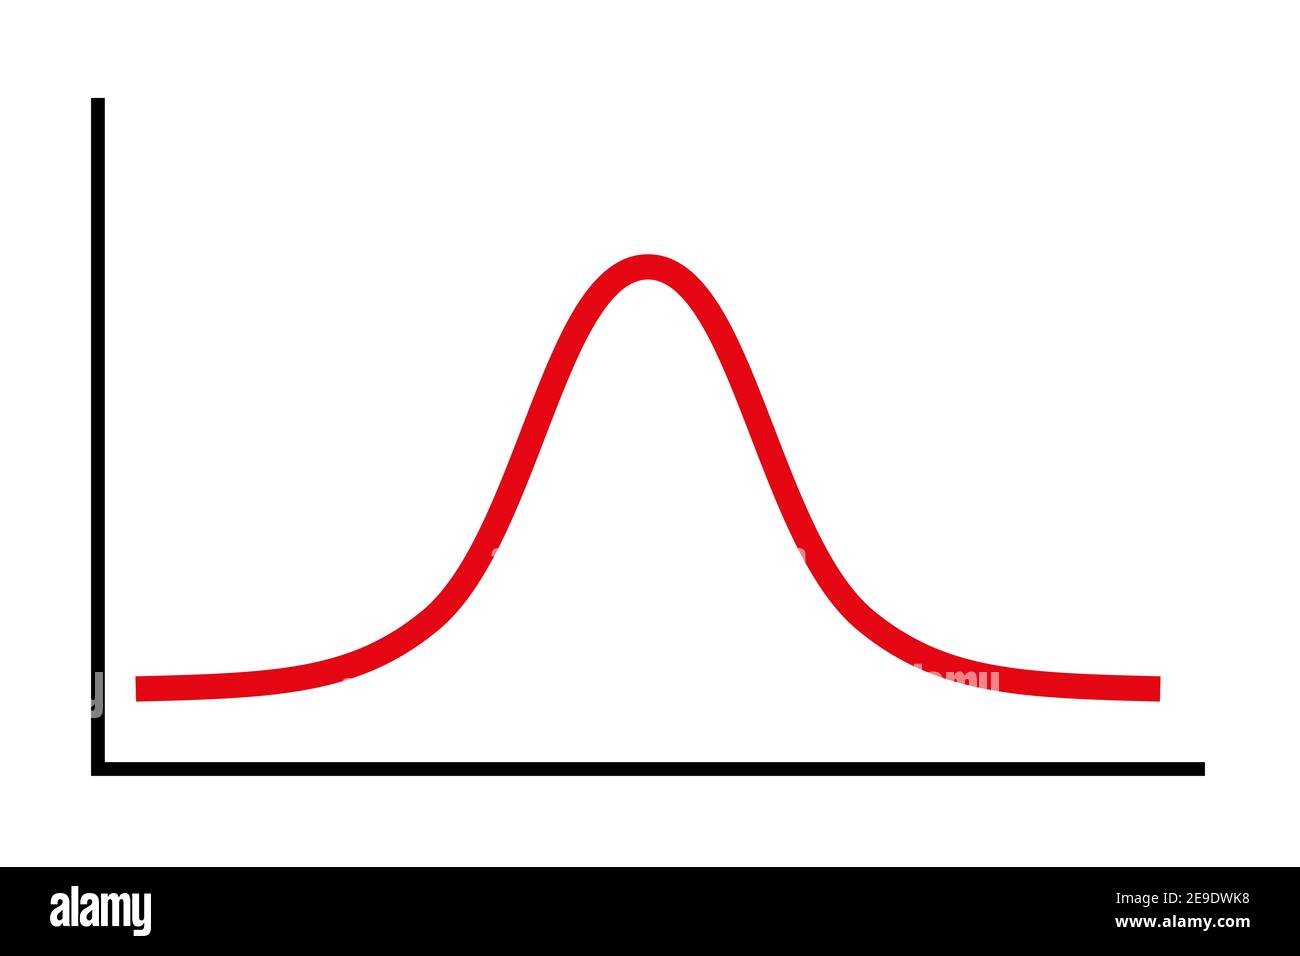 Glockenkurvensymbol, ein vereinfachtes Diagramm für eine normale Standardverteilung, auch Gaußsche Verteilung genannt, wird in der Wahrscheinlichkeitstheorie verwendet. Stockfoto